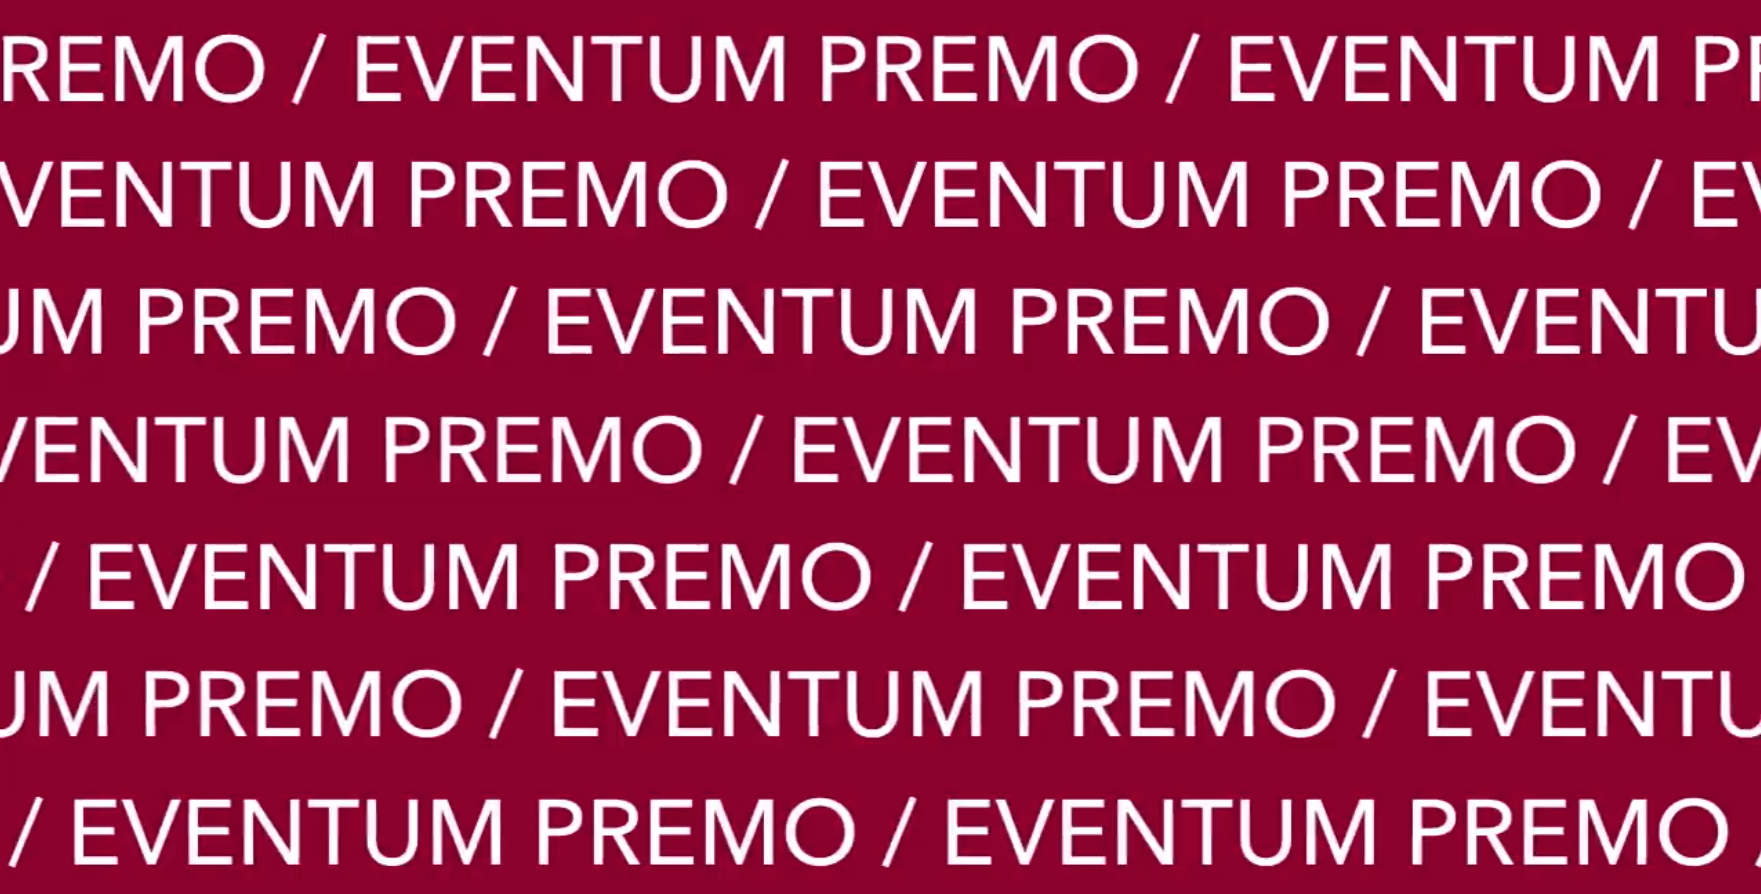 Eventum premo. Eventum Premo логотип. Eventum Premo агентство. Как получить Eventum.